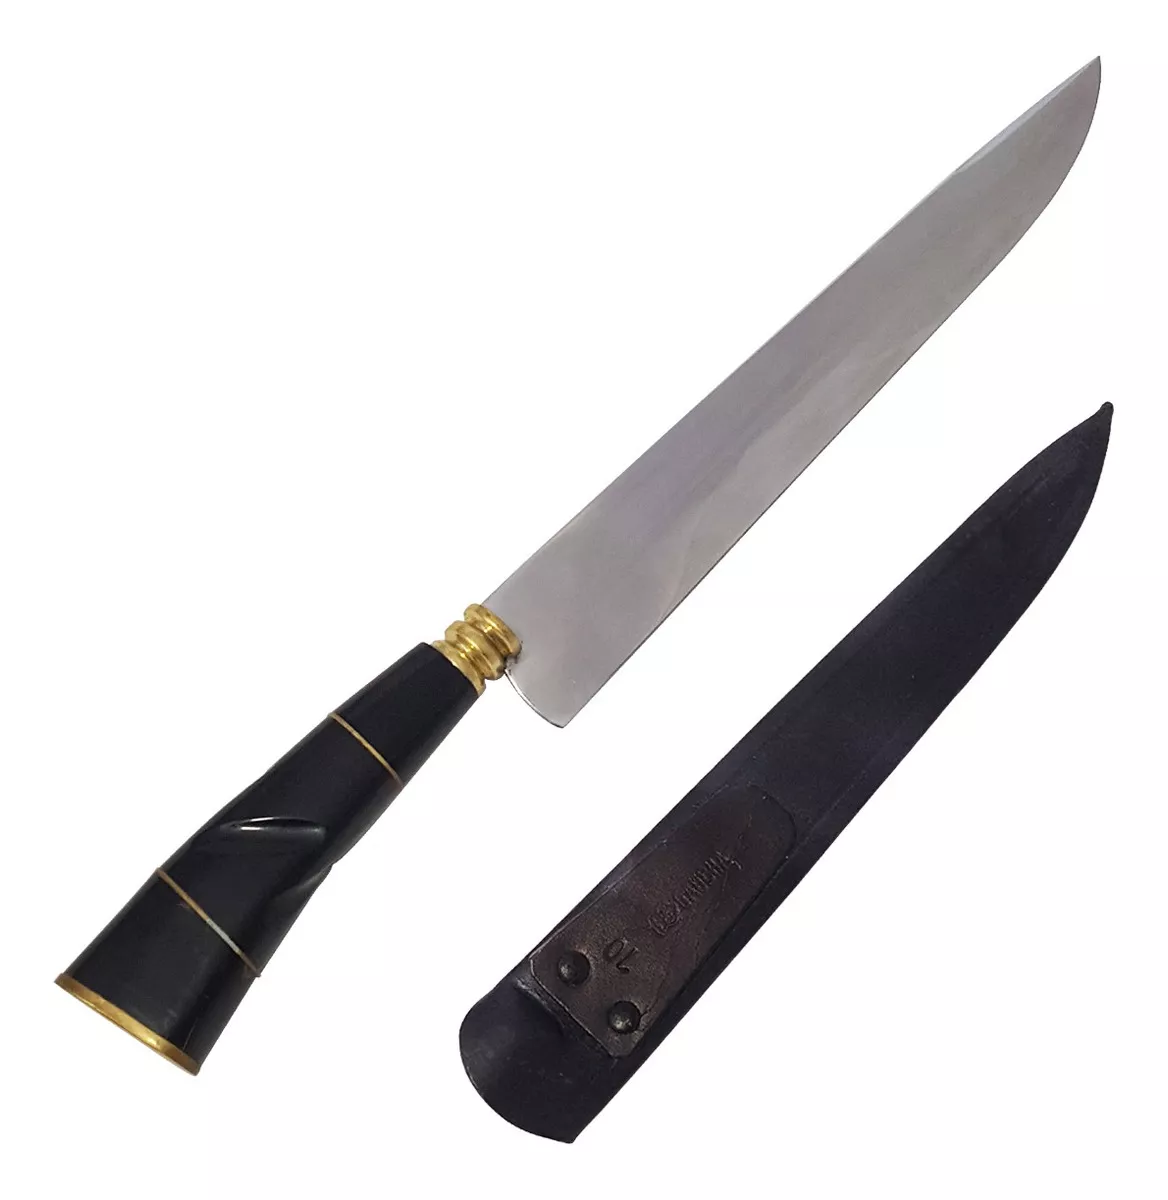 Segunda imagem para pesquisa de faca antiga usada